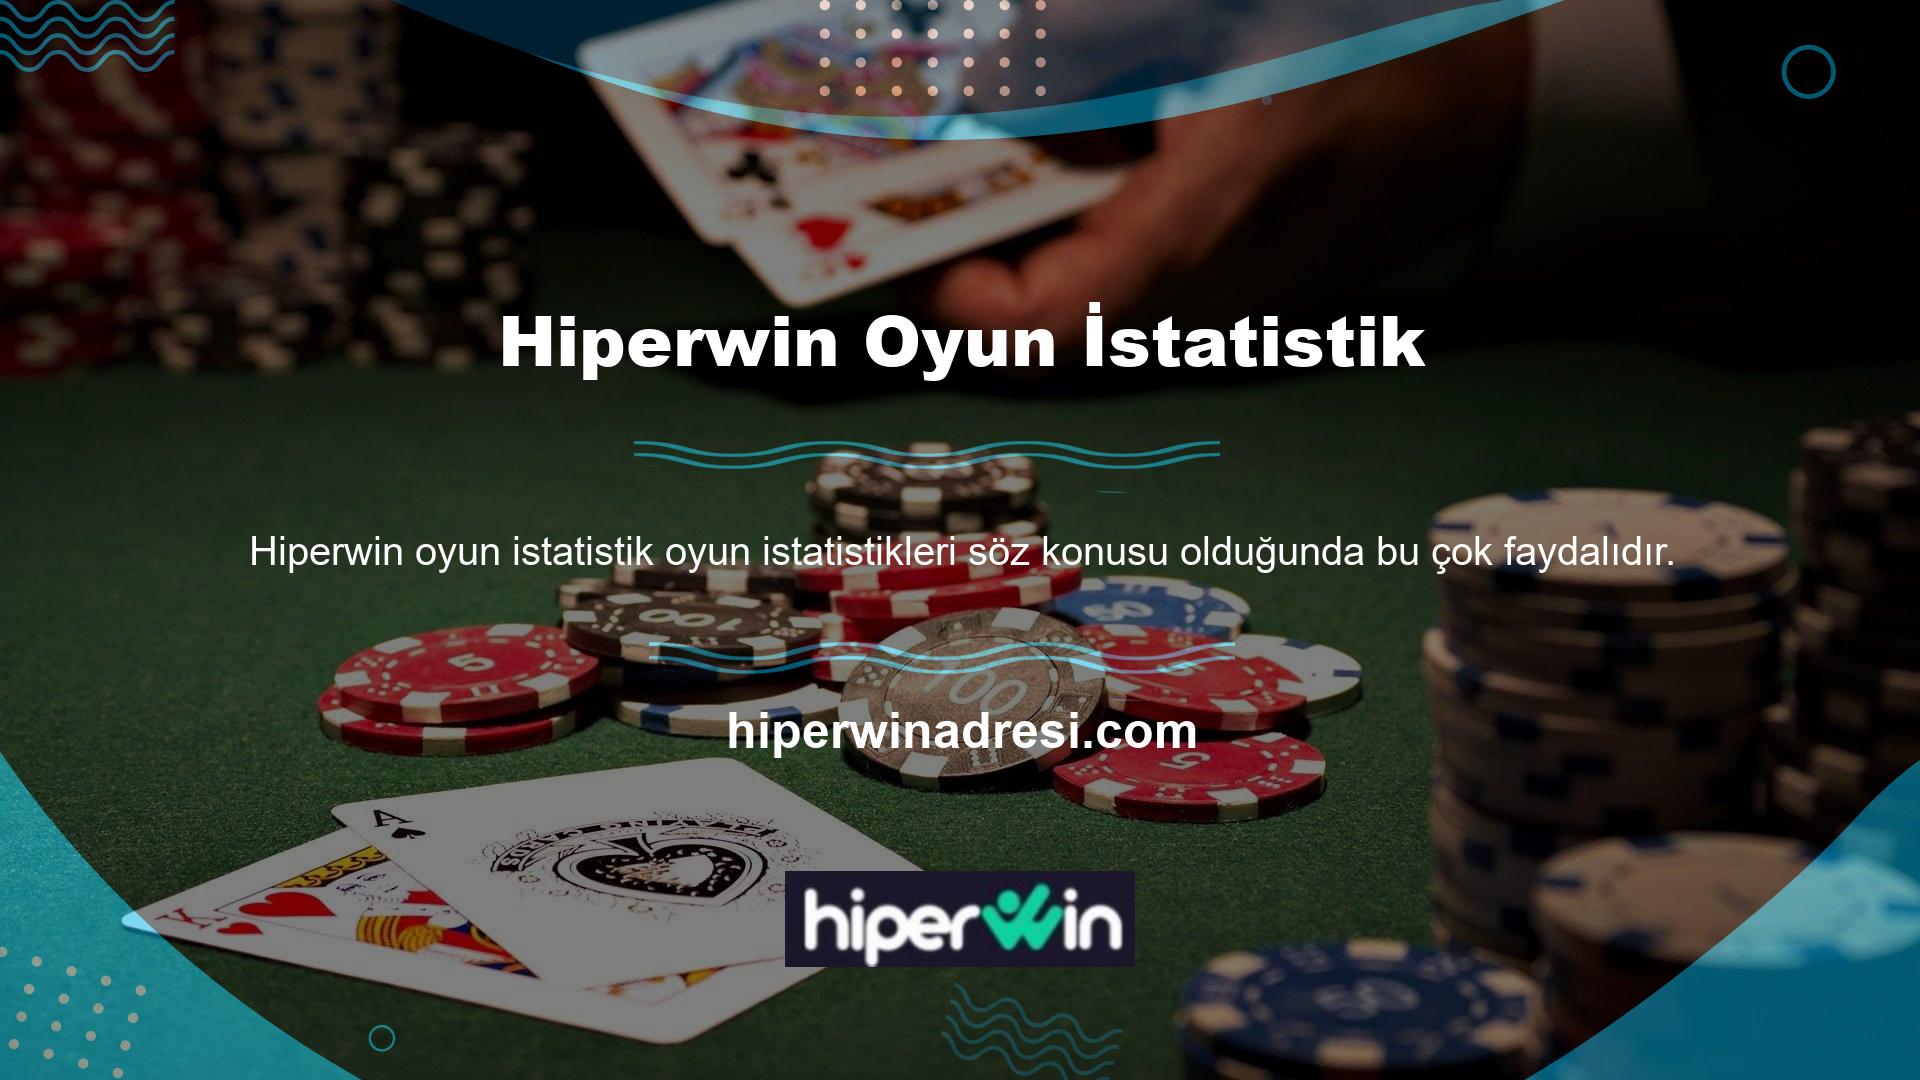 Ancak günümüzde hangi Türk online casino şirketinin güvenilir olduğunu belirlerken bazı kriterlere dikkat etmek mantıklıdır